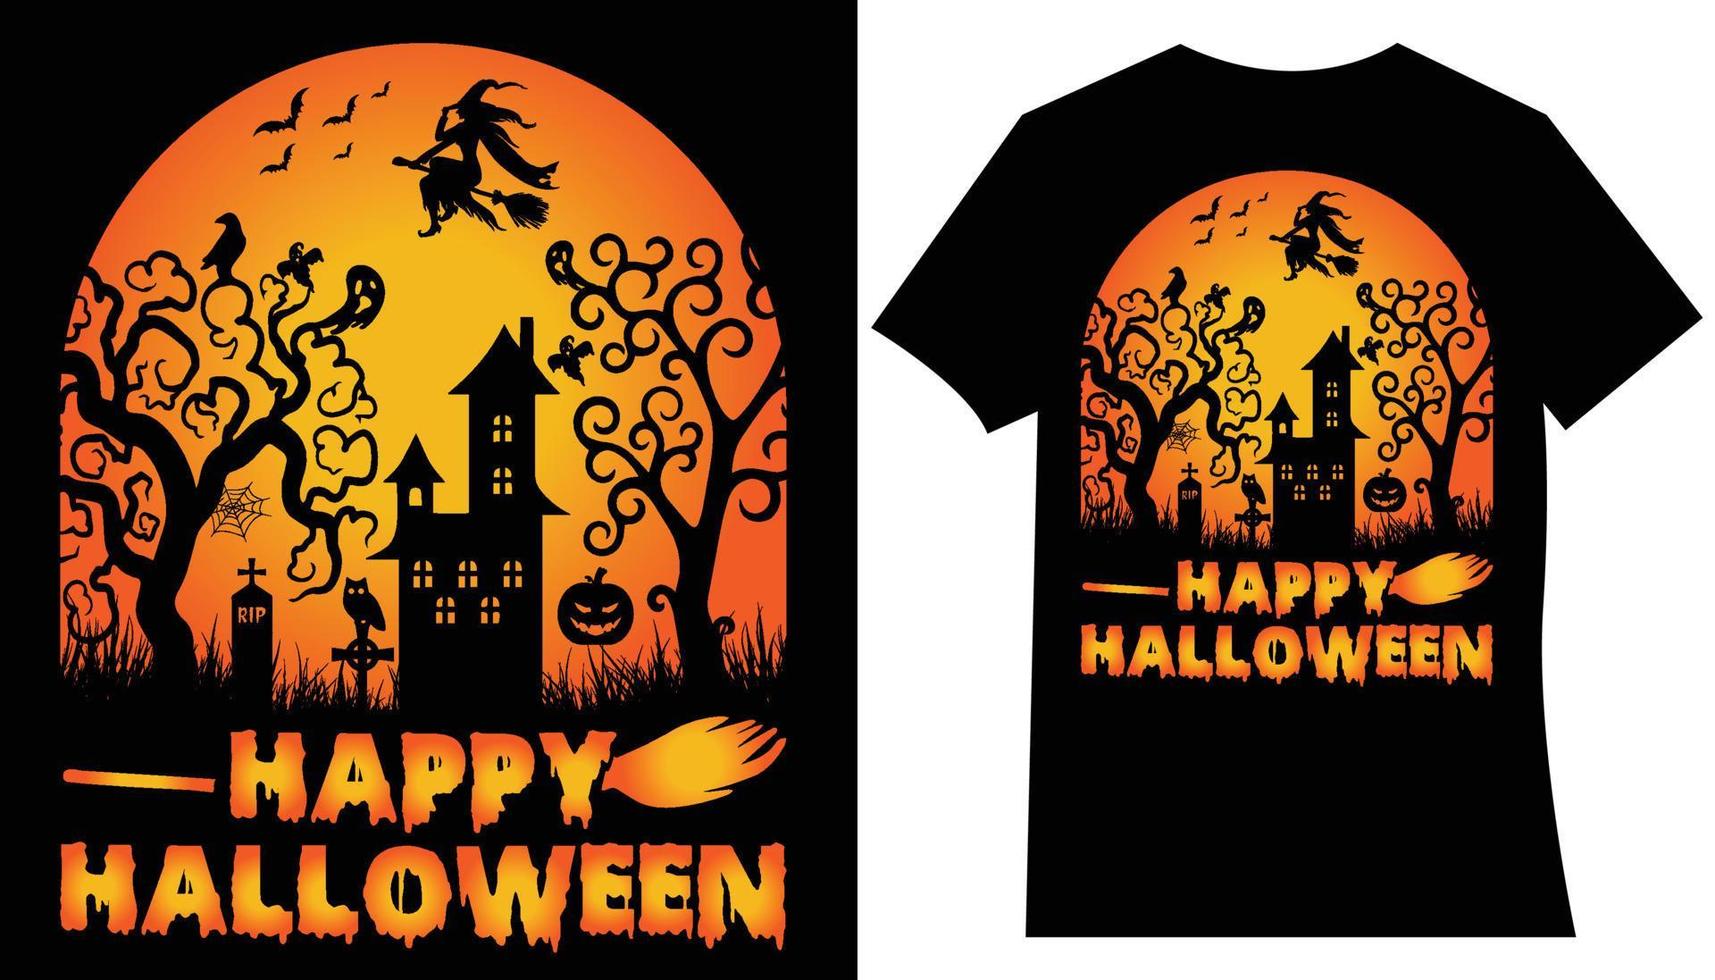 vecteur de conception de t-shirt halloween heureux. illustration vectorielle de style dessin animé de citrouille, chat de sorcière et chauves-souris, isolés sur fond blanc. imprimer pour la conception de t-shirts ou d'affiches. joyeux texte d'halloween.